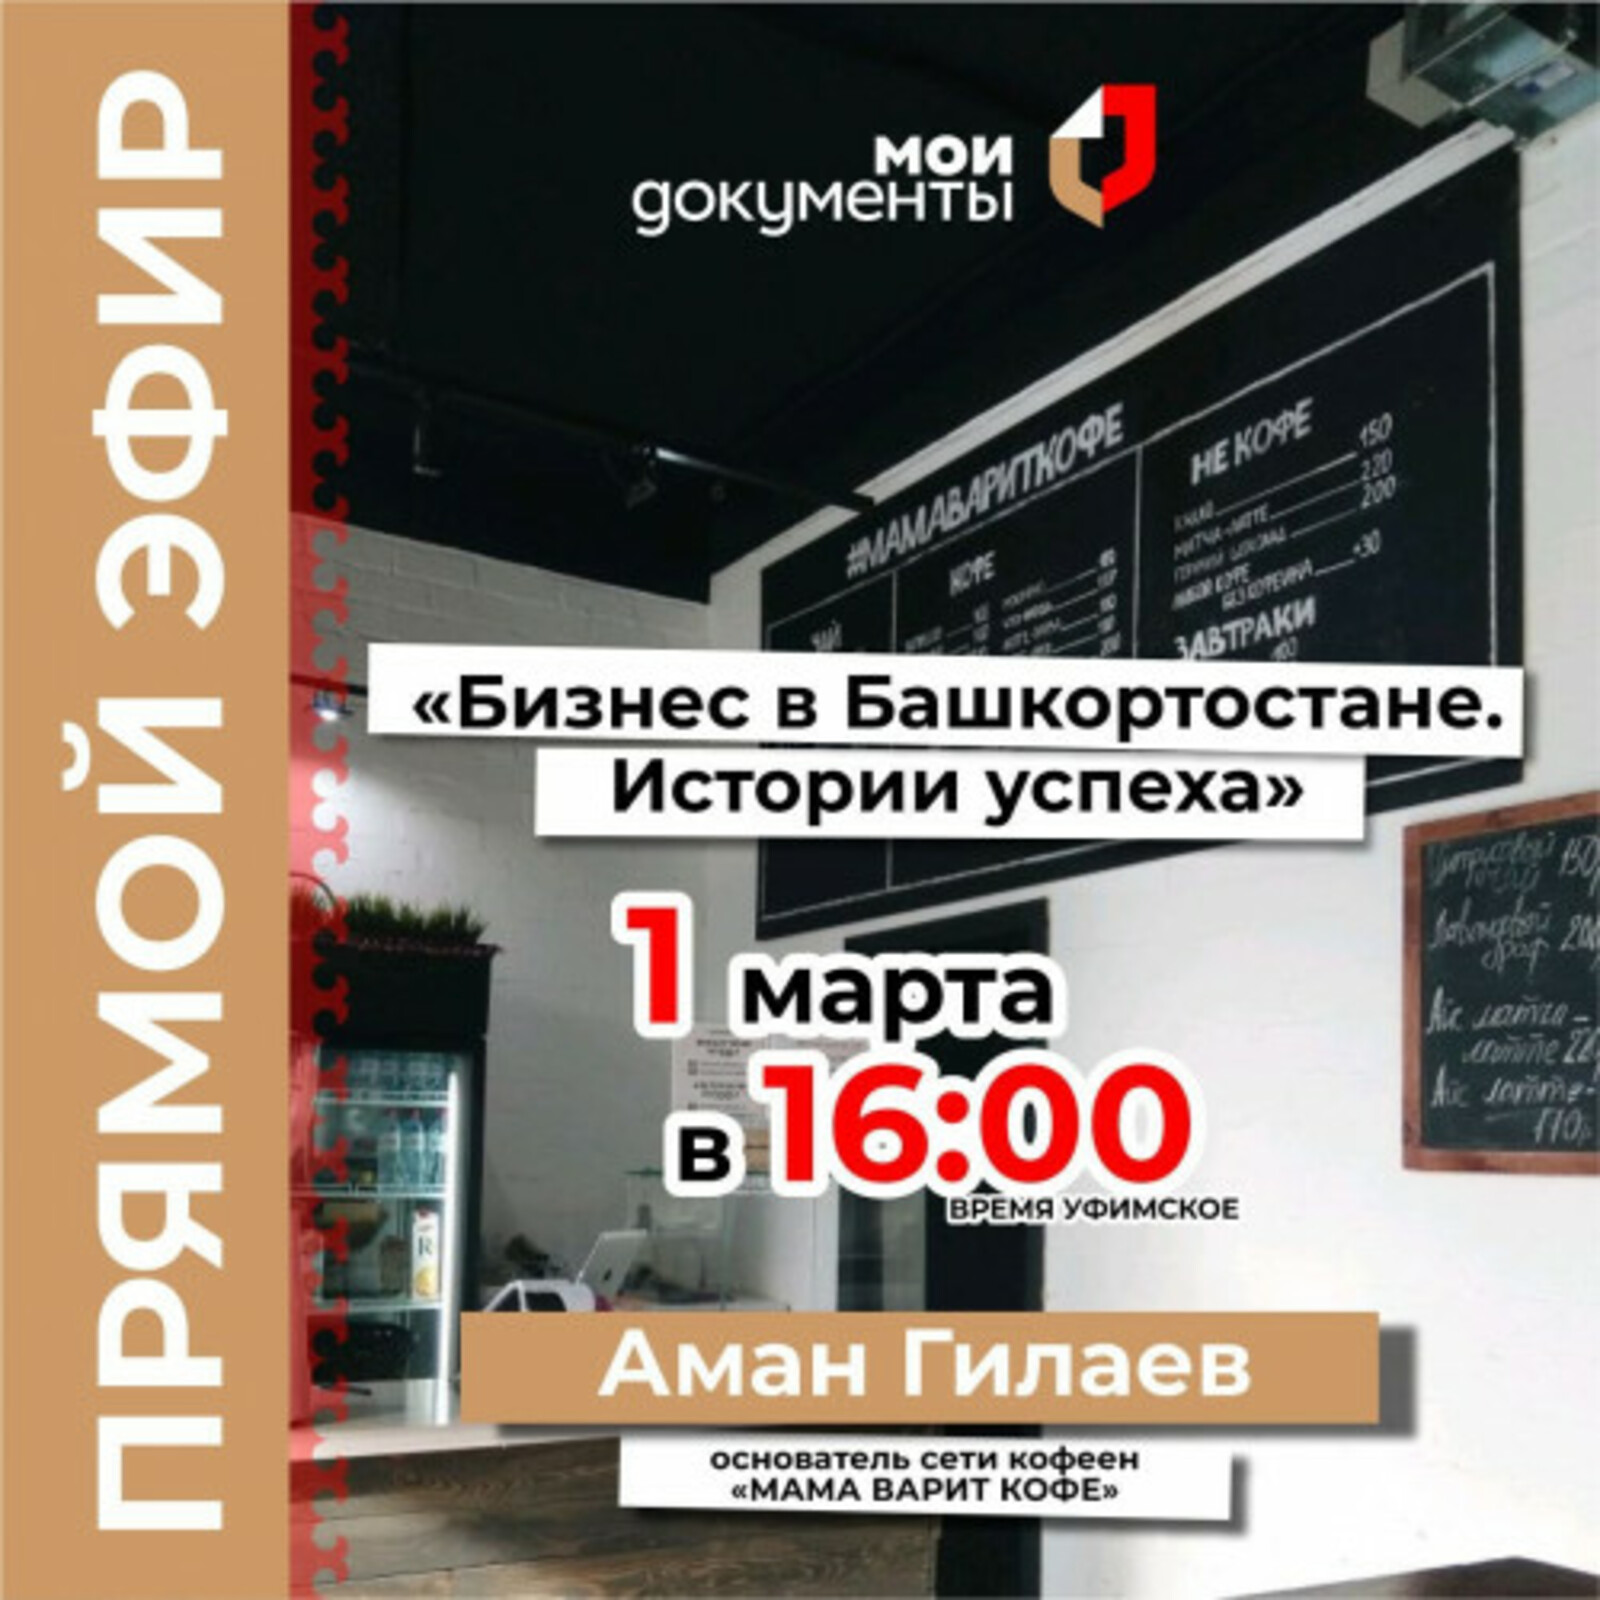 Не пропустите прямой эфир для предпринимателей в рамках проекта «Бизнес в Башкортостане. Истории успеха»!